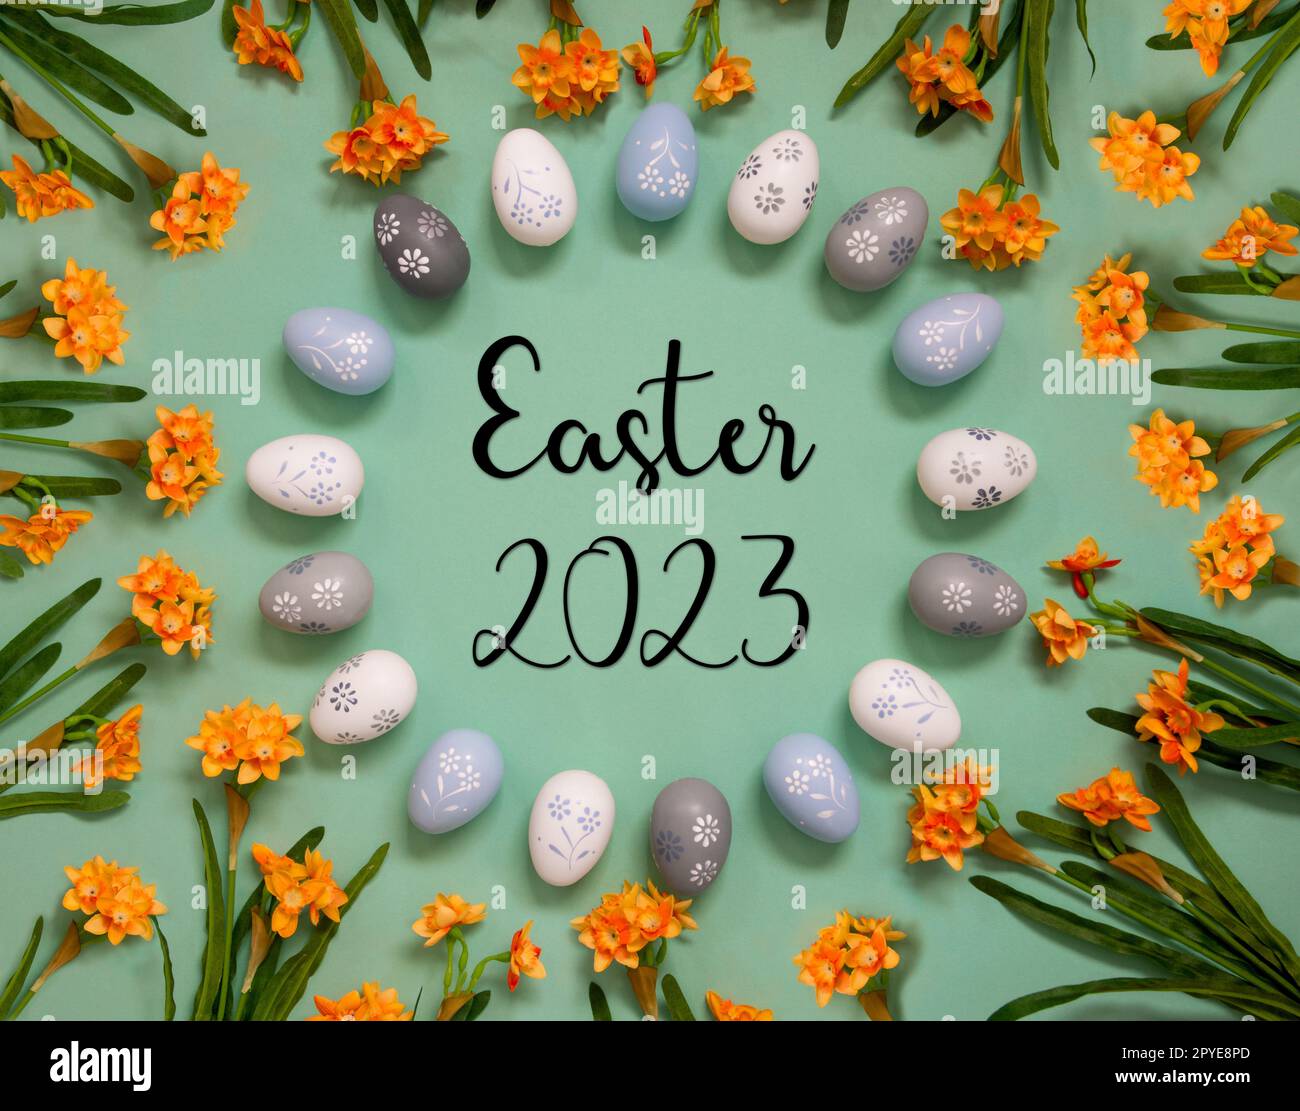 Décoration d'oeufs de Pâques, fleurs de printemps, mot anglais Pâques 2023 Banque D'Images